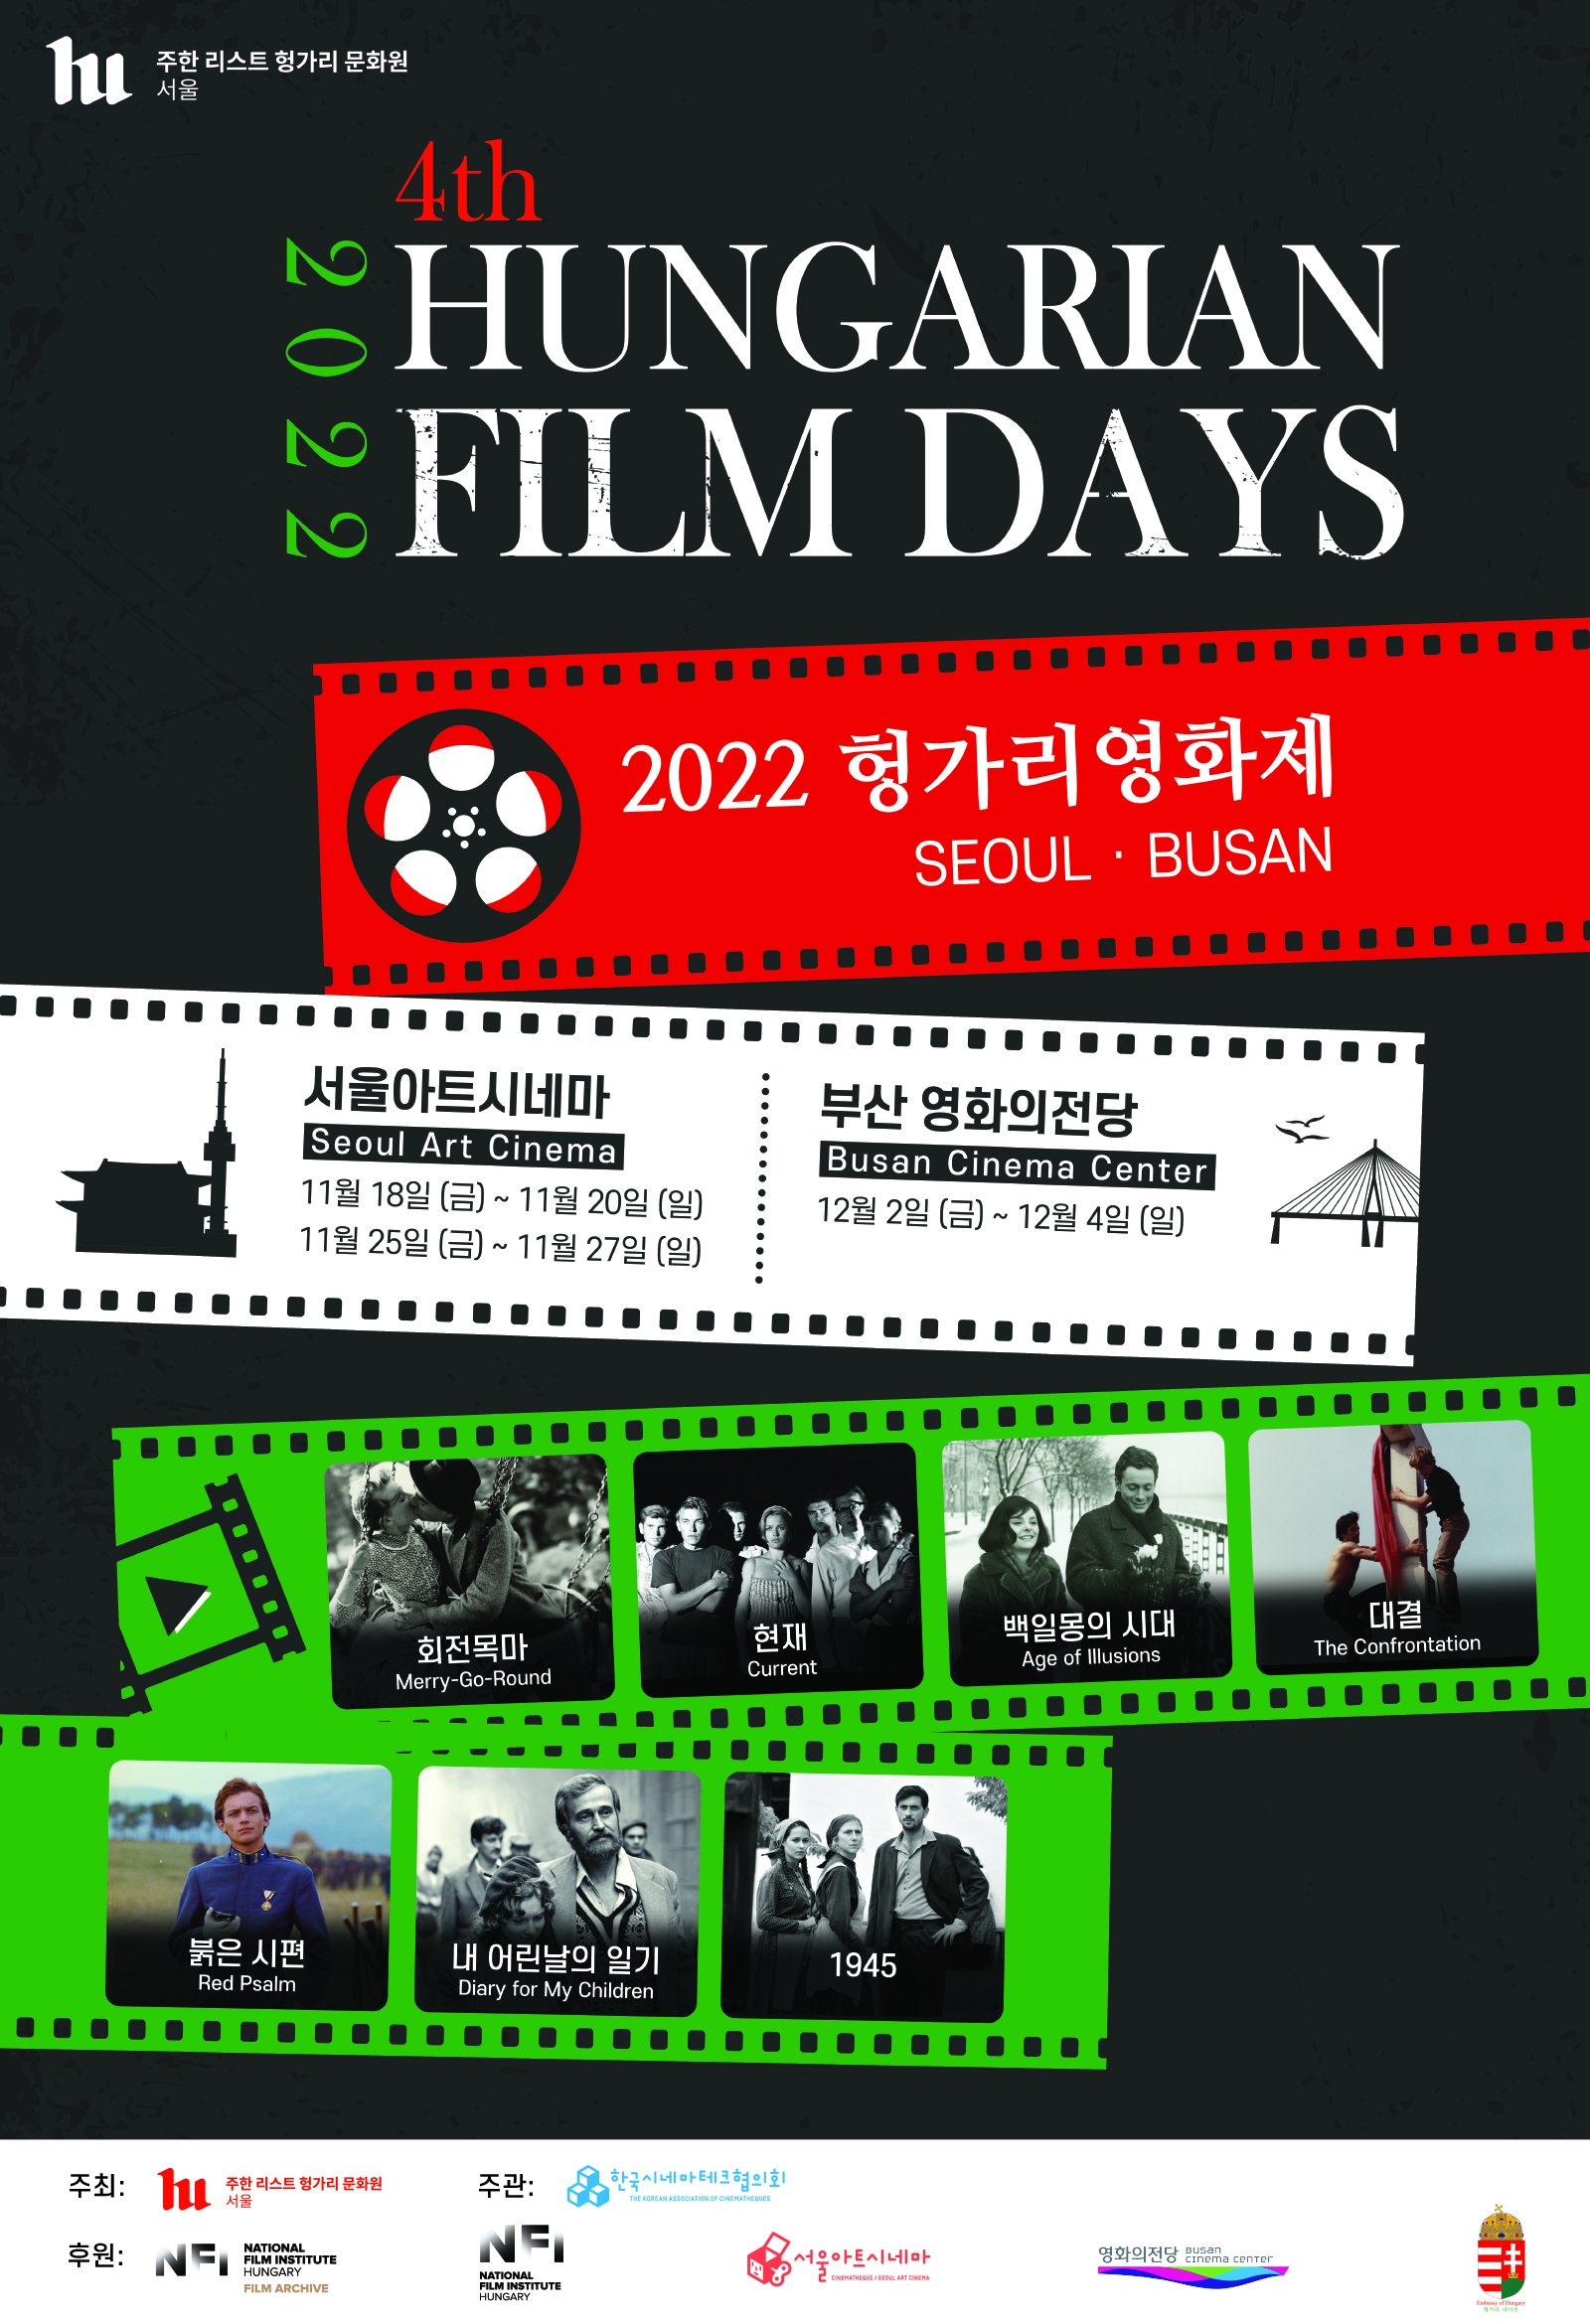 주한 서울 리스트 헝가리 문화원, 4th 2022 HUNGARIAN FILM DAYS, 2022 헝가리영화제 SEOUL, BUSAN, 서울아트시네마 Seoul Art Cinema 11월 18일(금)~11월20일(일), 11월 25일(금)~11월27일(일), 부산 영화의전당 Busan Cinema Center, 12월 2일(금)~12월 4일(일), 회전목마 Merry-Go-Round, 현재 Current, 백일몽의 시대 Age of lllusions, 대결 The Confrontation, 붉은 시편 Red Psalm, 내 어린날의 일기 Diary for My Children, 1945, 주최: 주한 서울 리스트 헝가리 문화원, 주관: 한국시네마테크협의회, 후원, NATIONAL FILM INSTITUTE HUNGARY FILM ARCHIVE, 서울아트시네마, 영화의전당